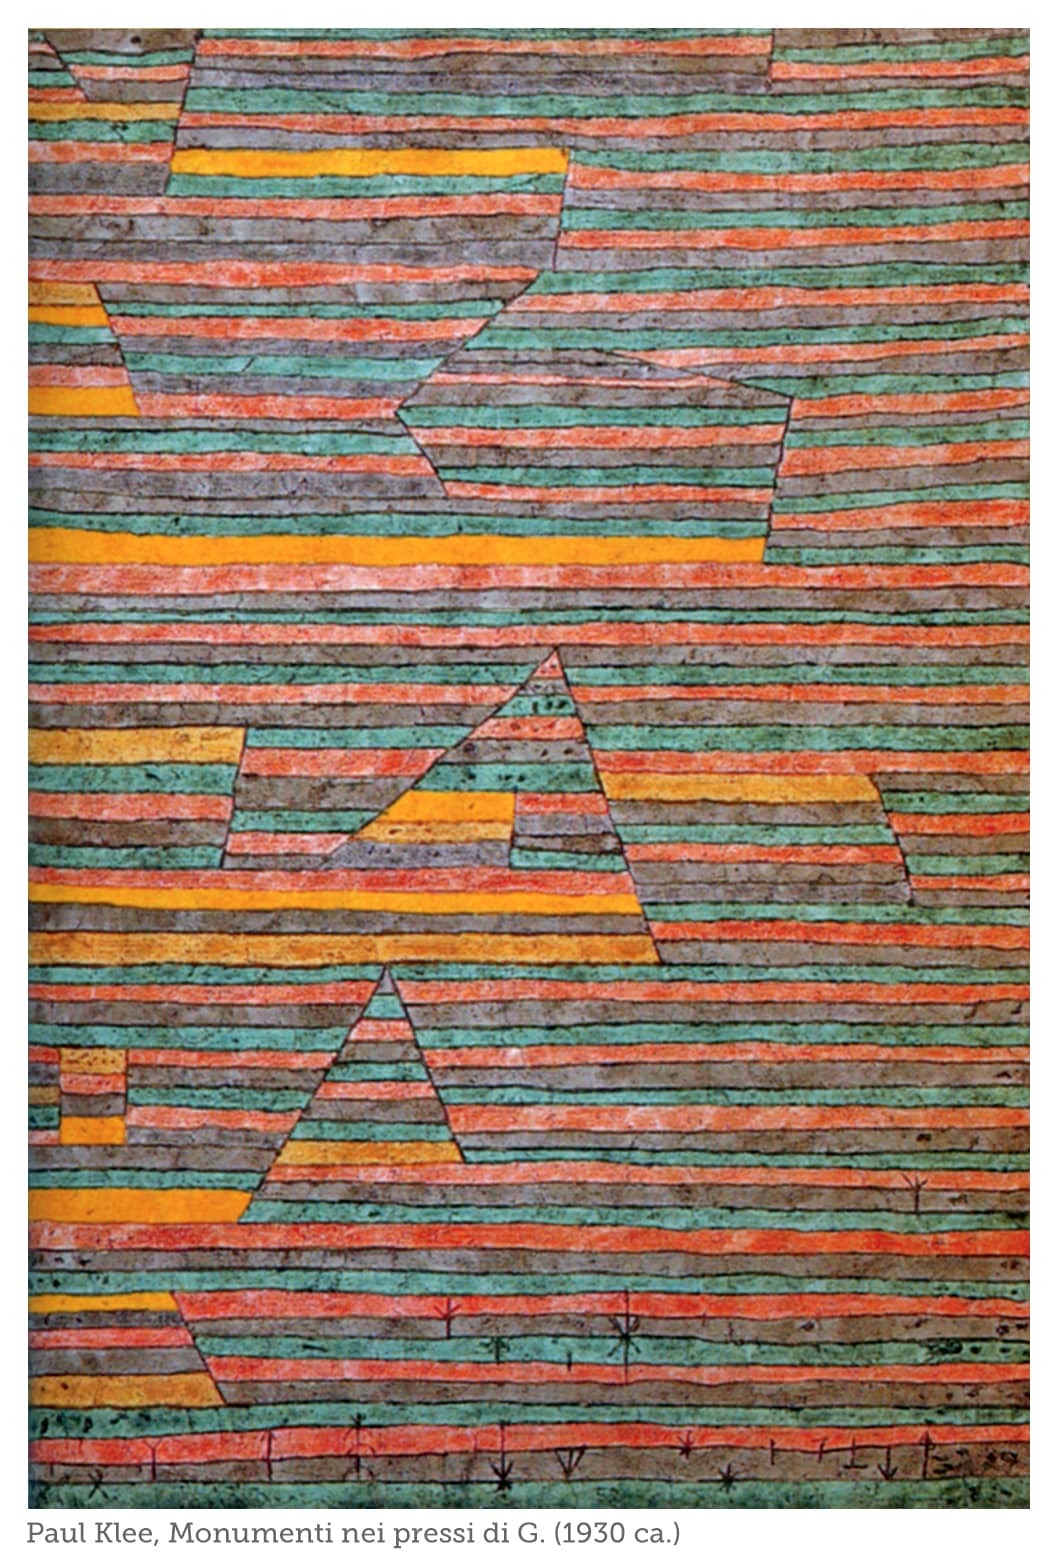 Paul Klee: architetture di cristallo